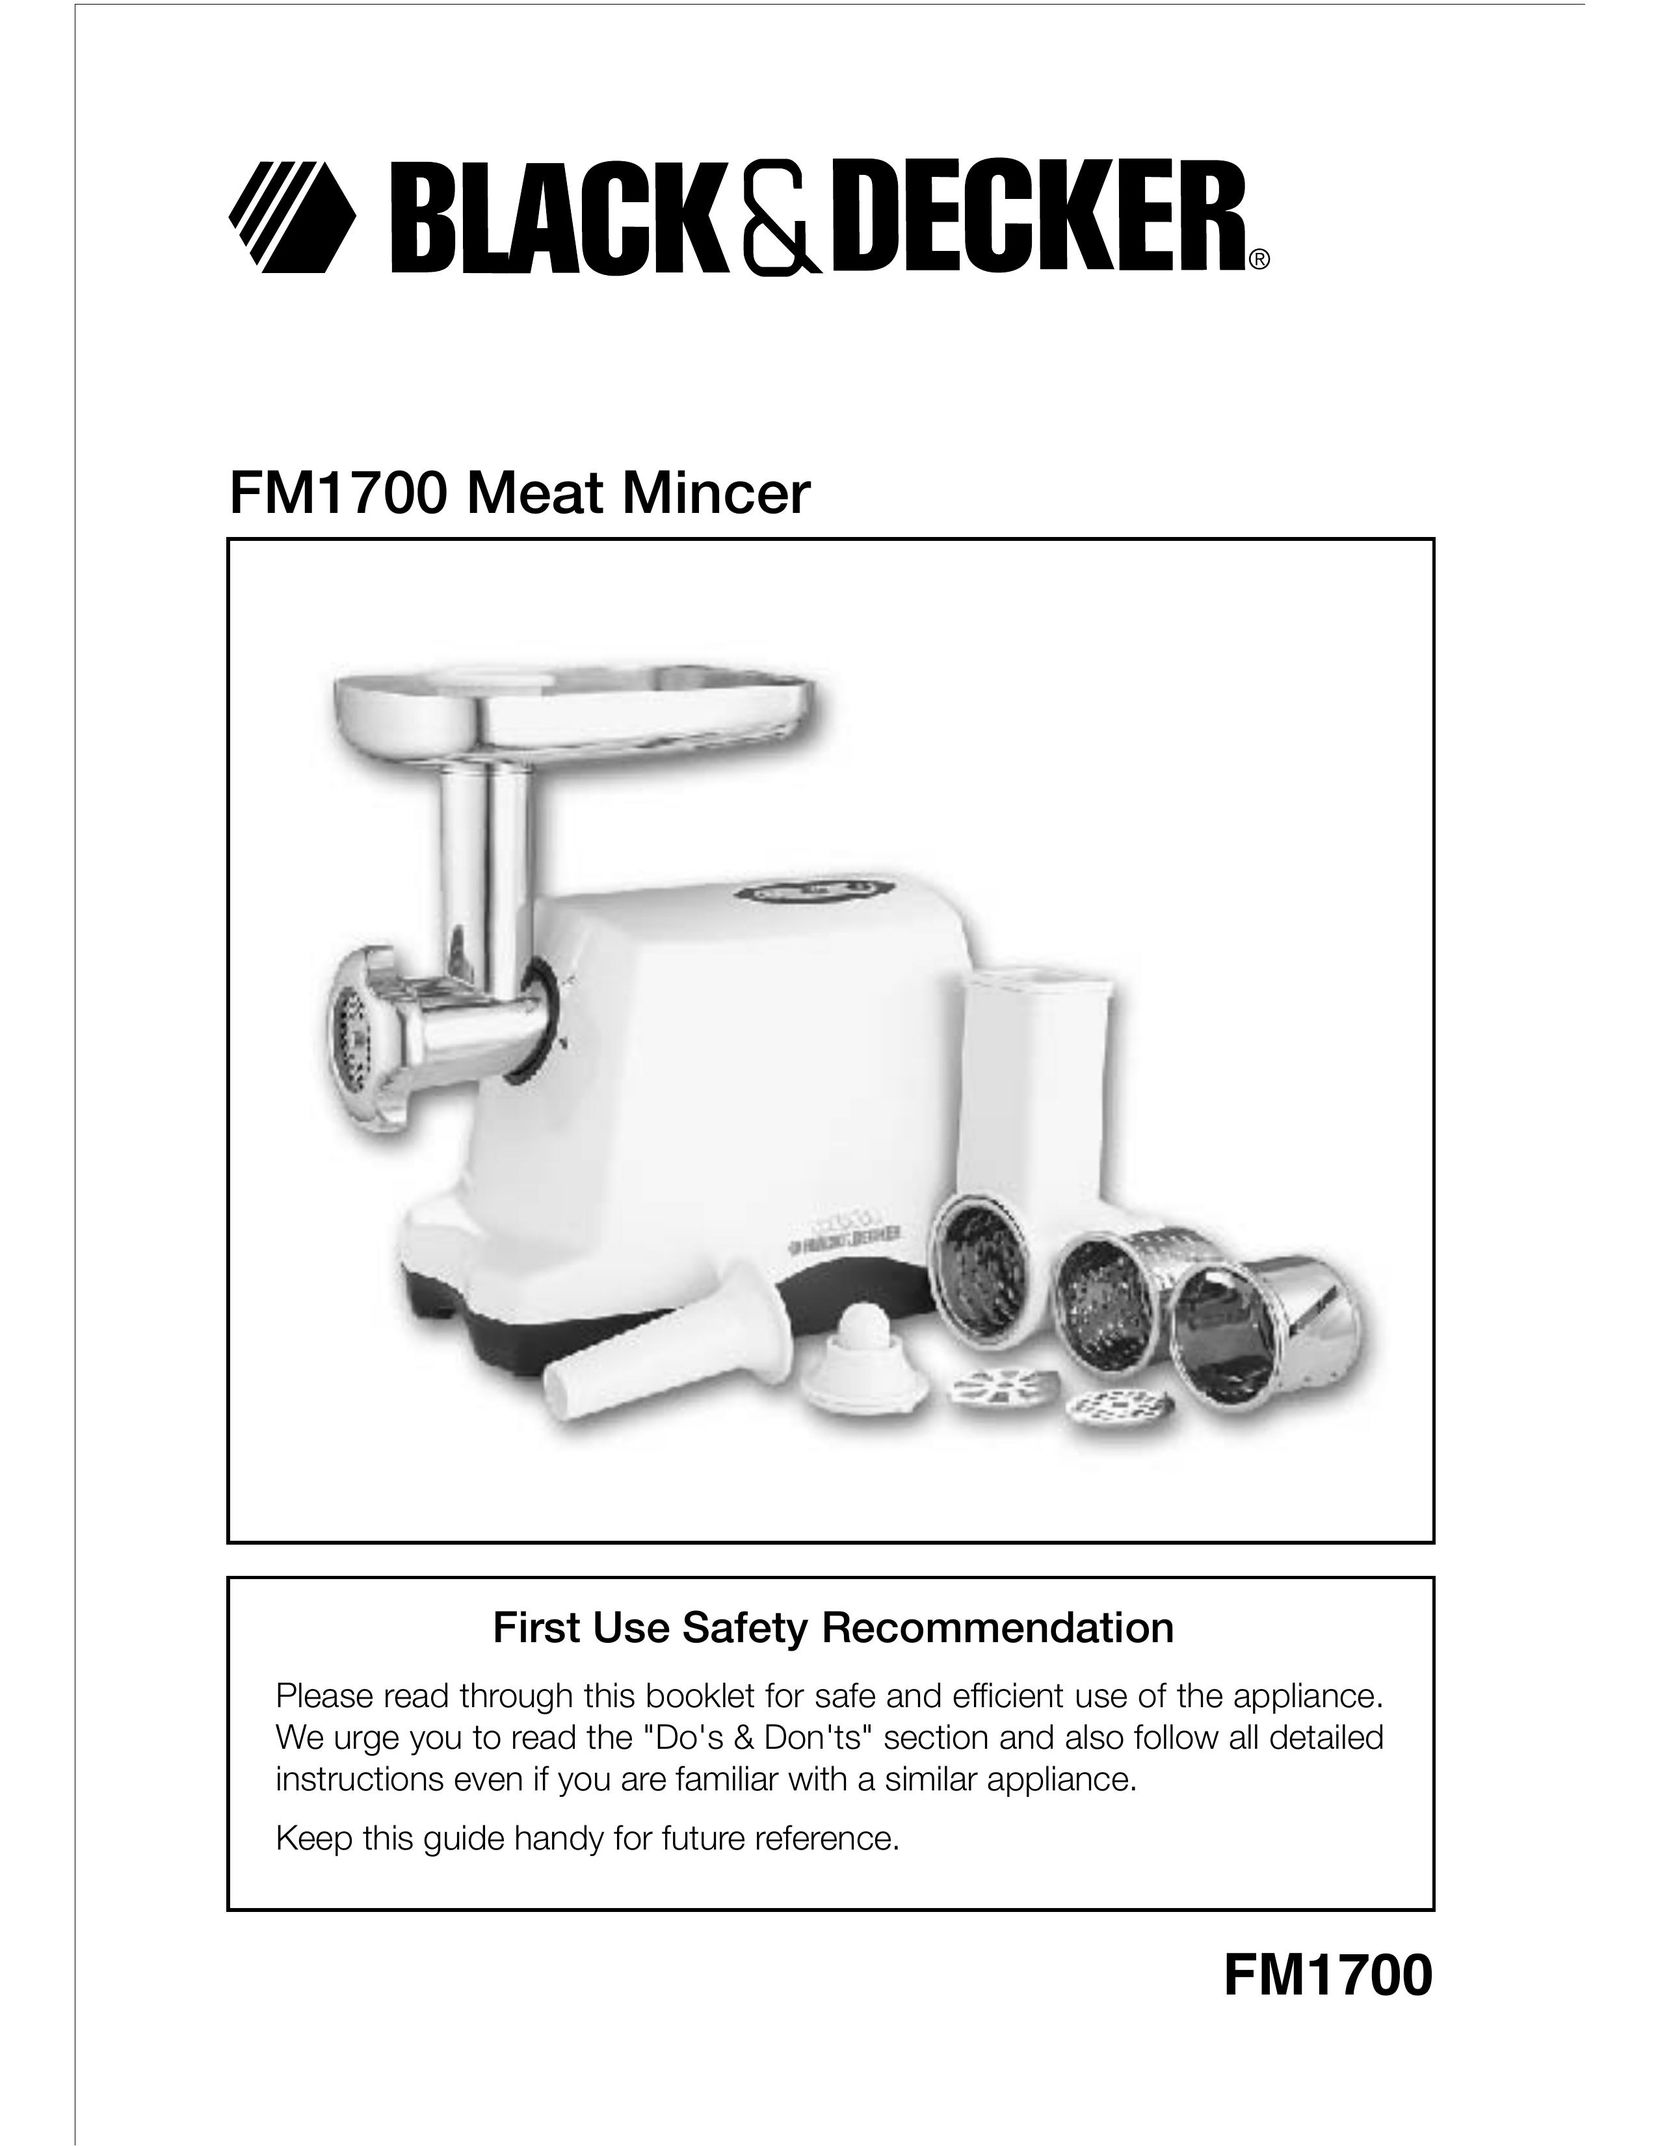 Black & Decker FM1700 Kitchen Utensil User Manual